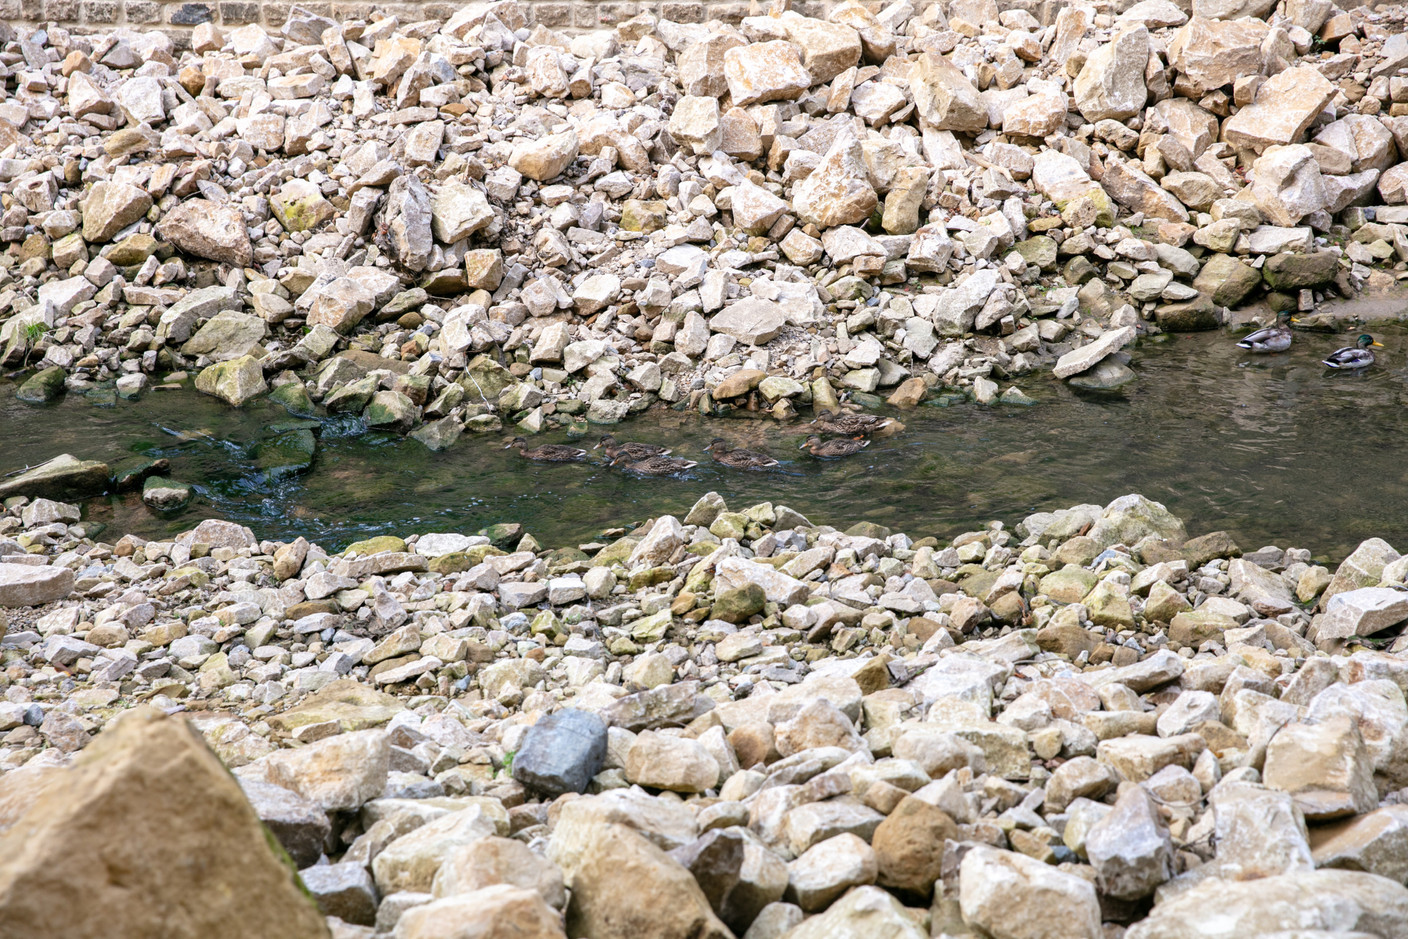 Le cours d’eau s’écoule de manière plus naturelle, avec des abords en pierre naturelle. (Photo: Romain Gamba / Maison Moderne)